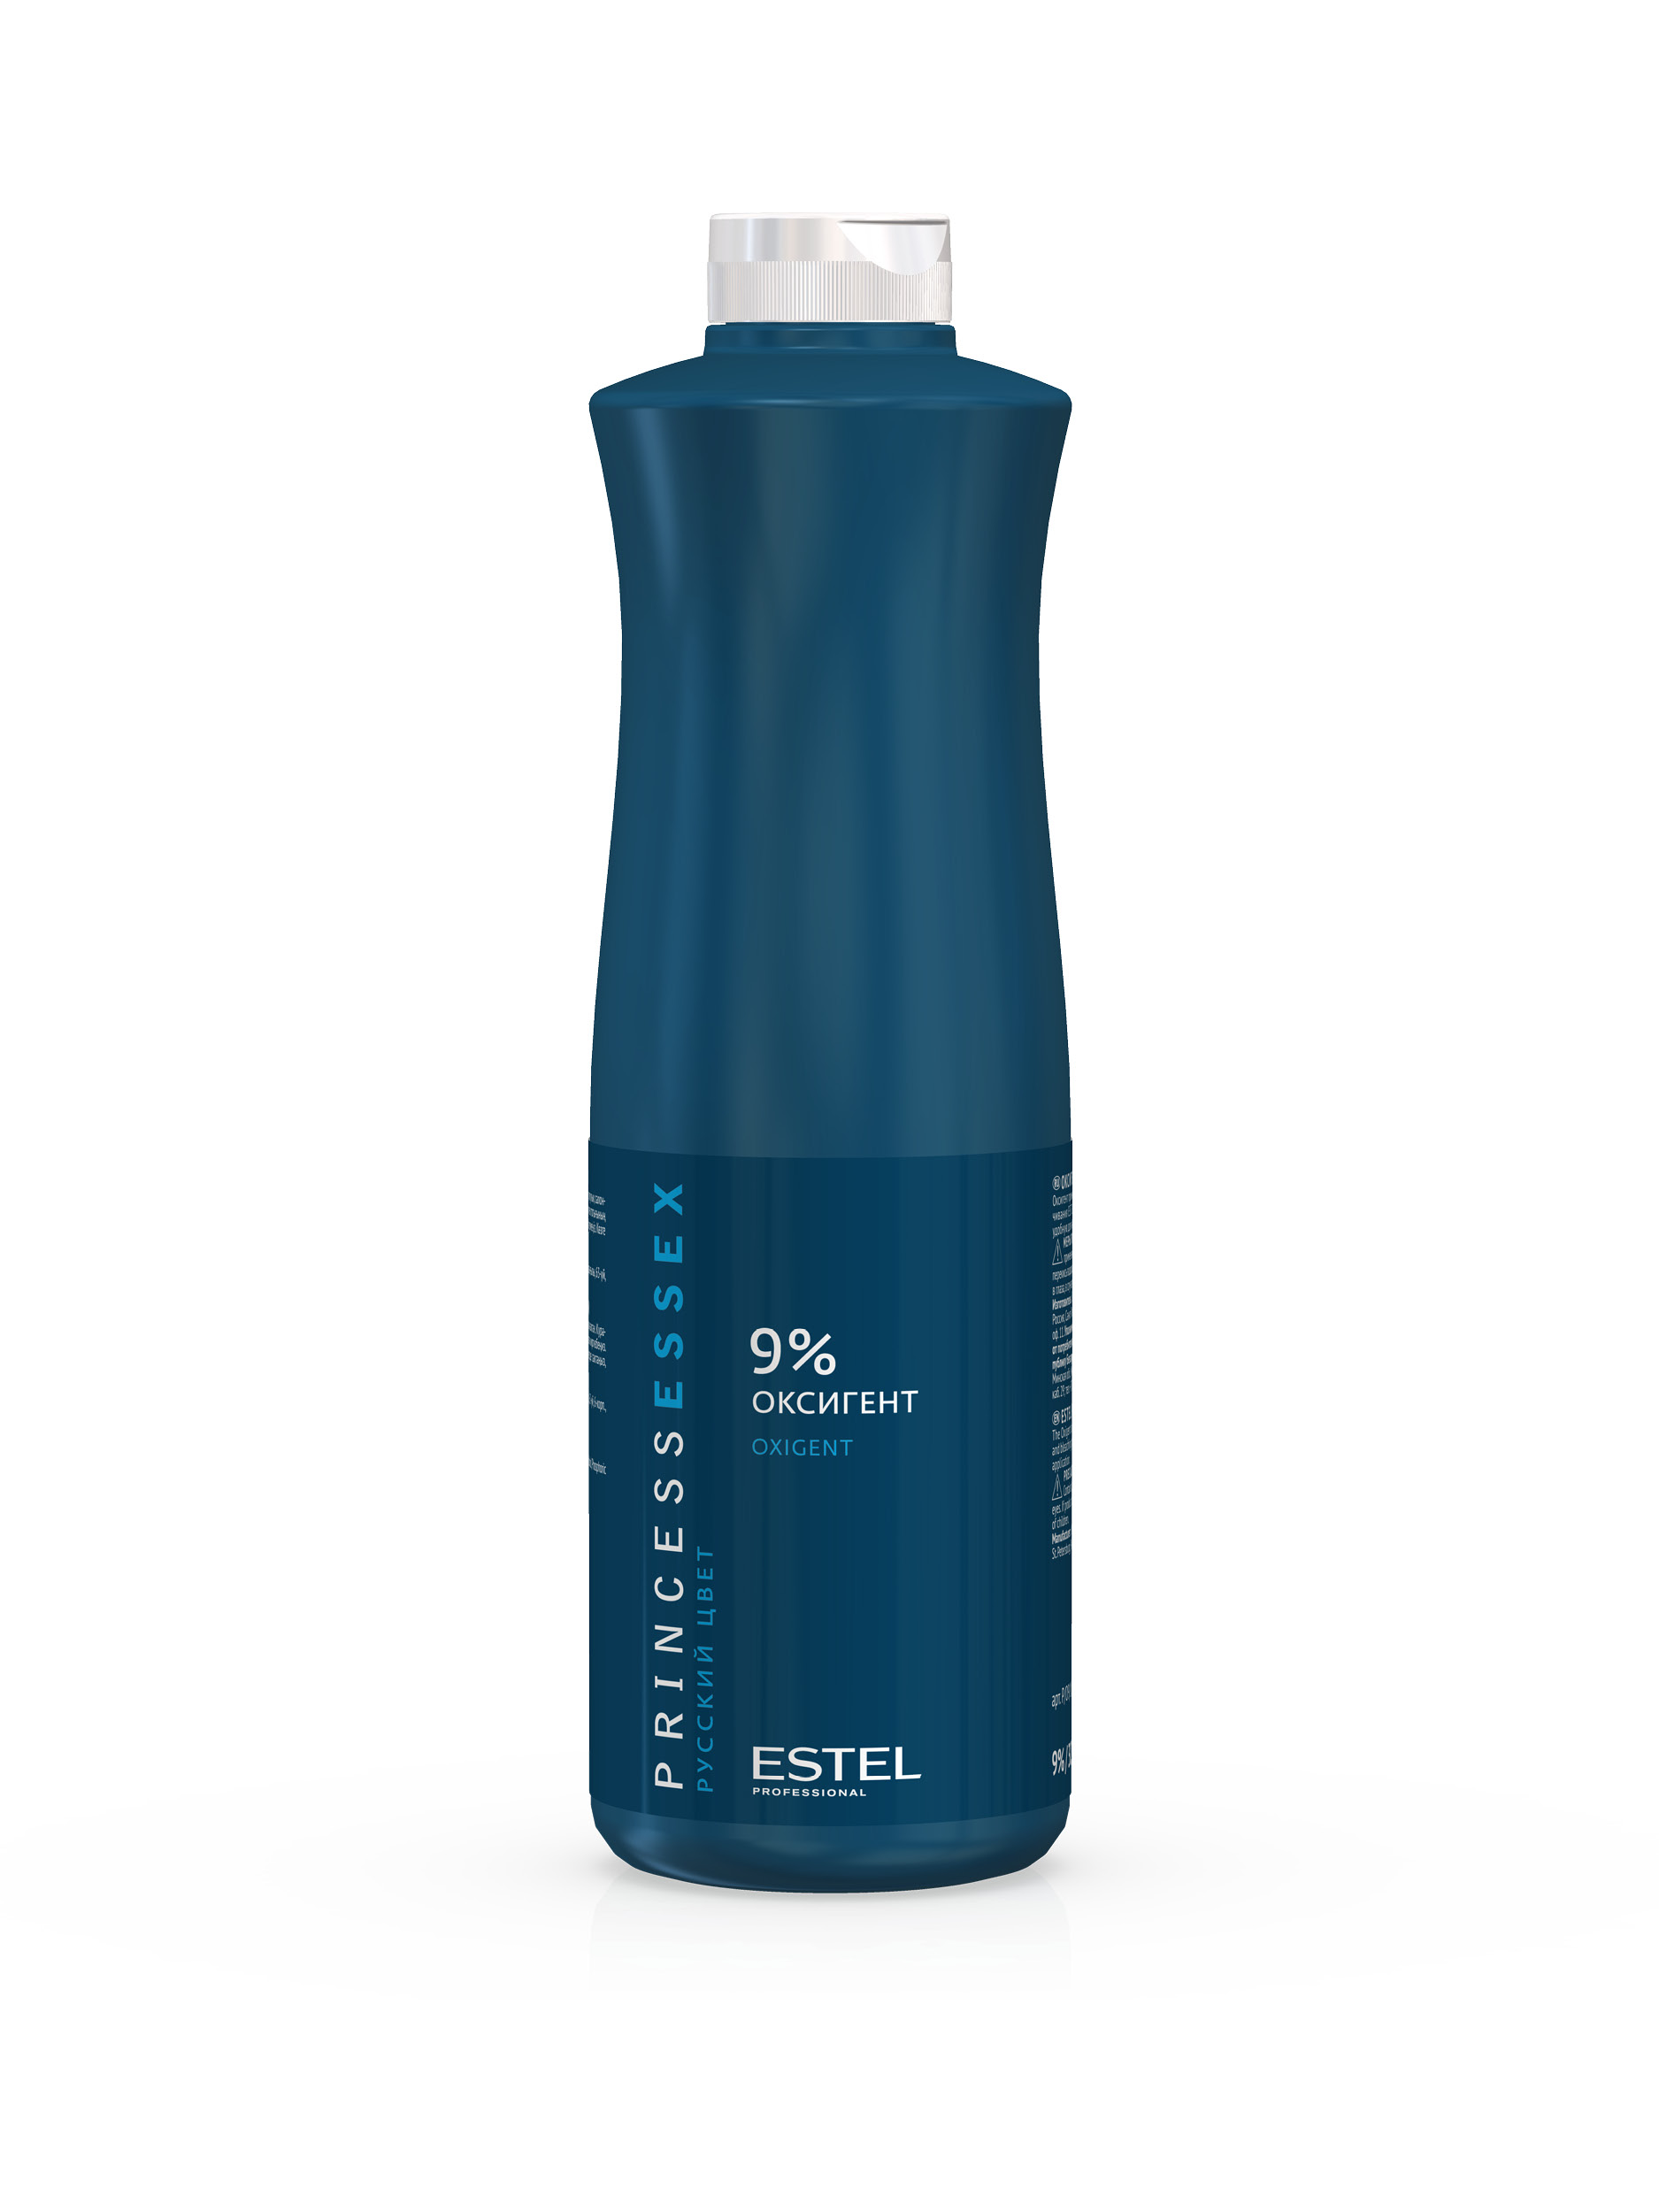 Окислитель Estel Professional Princess Essex Oxigent 9% 1 л estel professional шампунь для волос с комплексом масел 250 мл